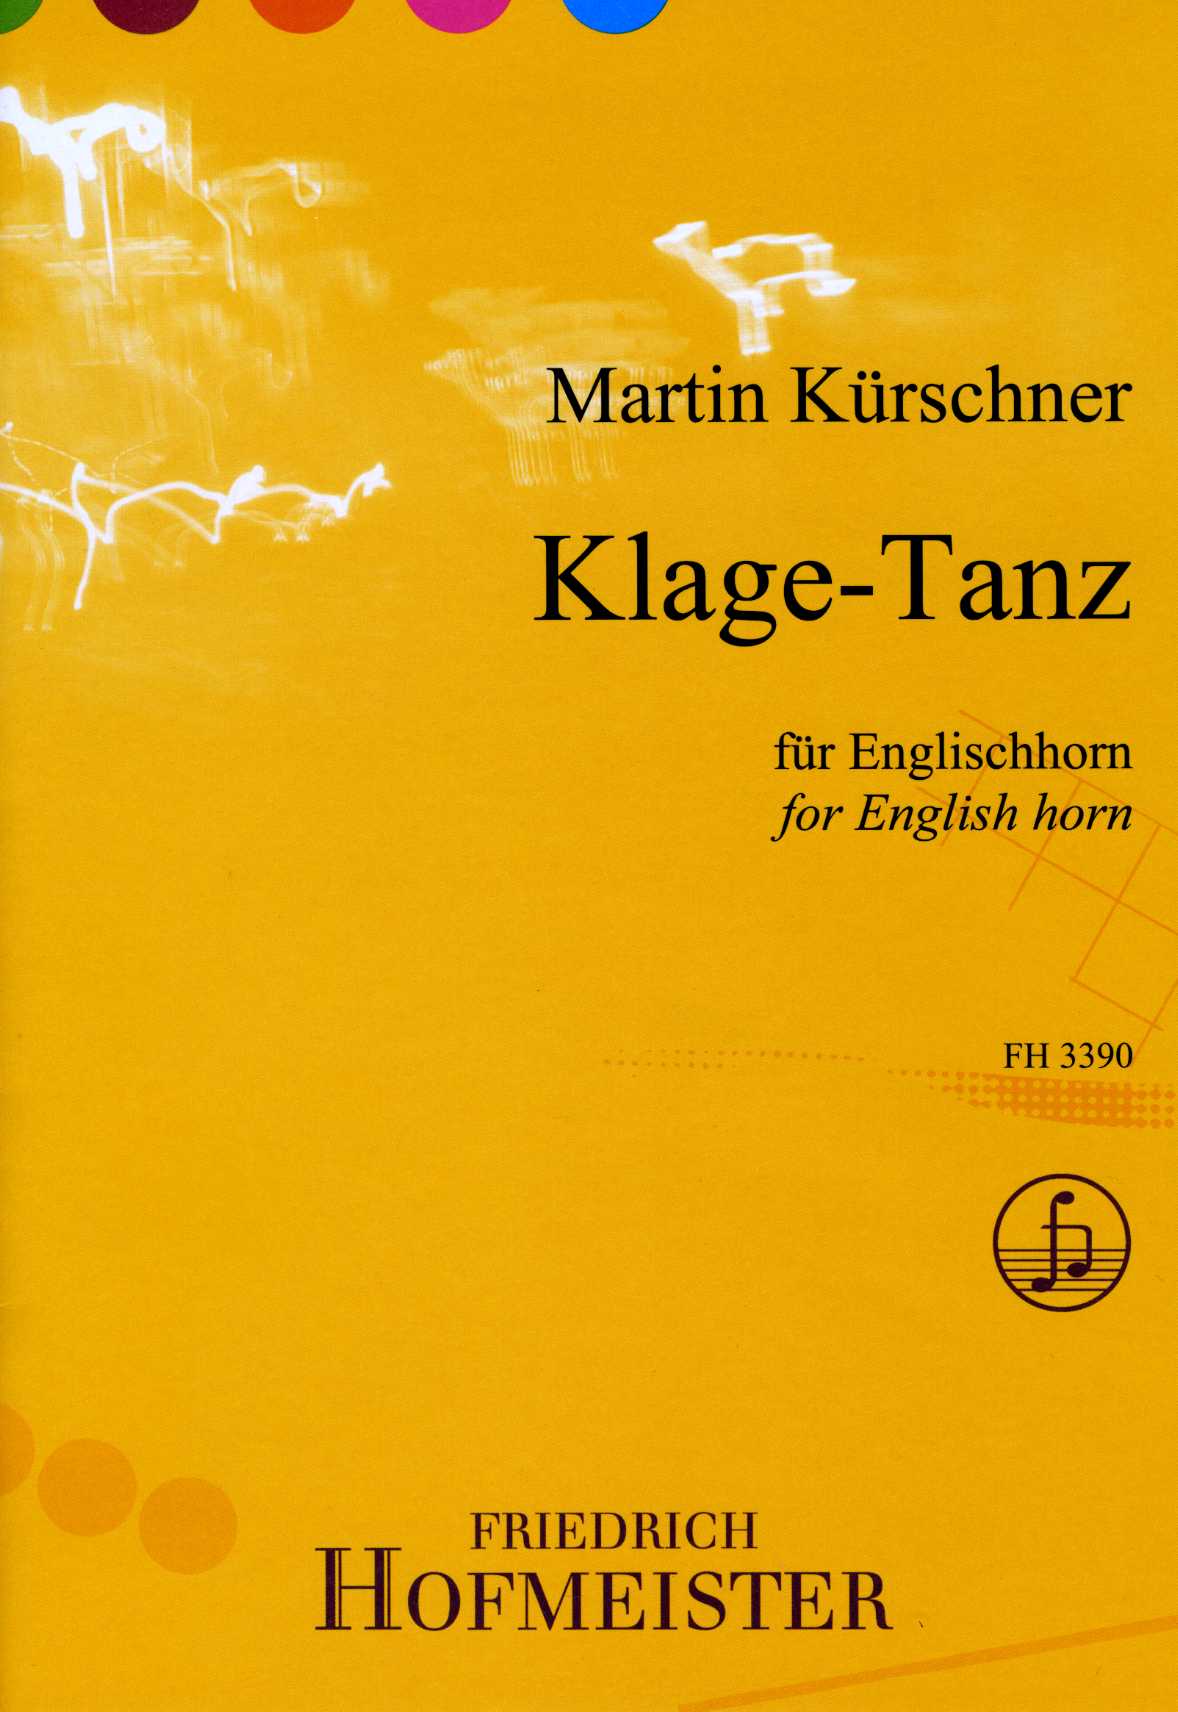 martin-kuerschner-klage-tanz-eh-_0001.JPG